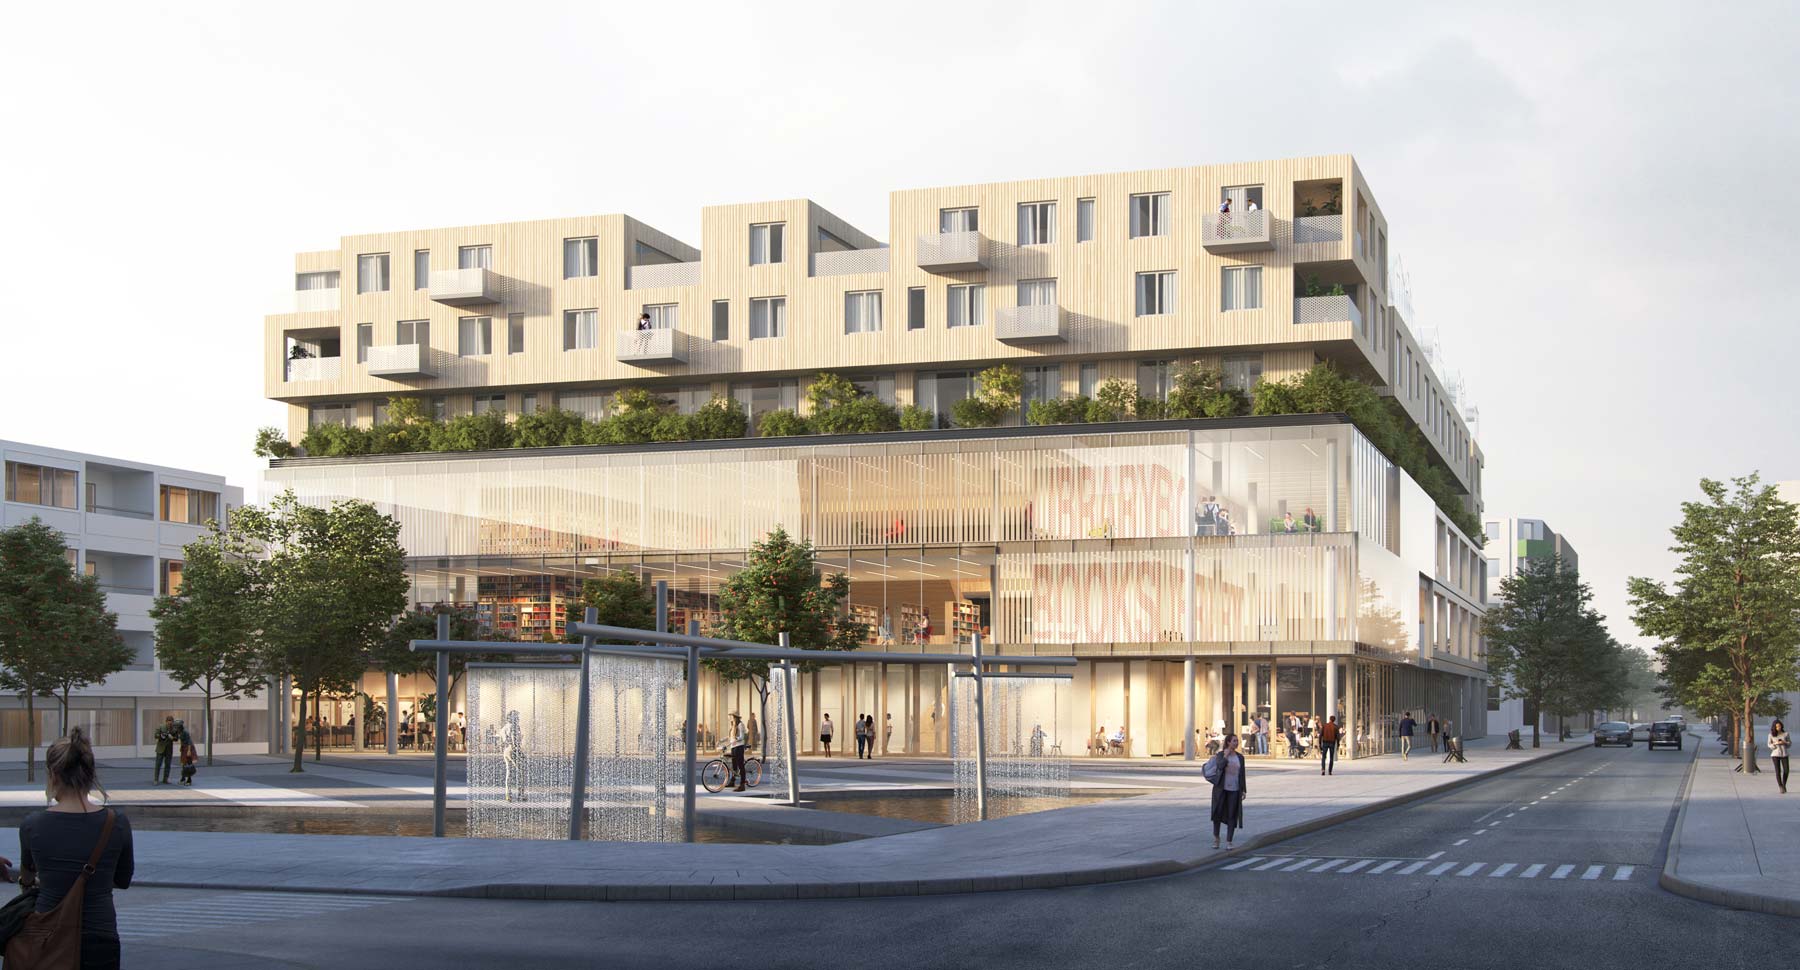 Die Visualisierung zeigt das geplante neue Gebäude "Heiners" am Heiner-Metzger-Platz in Neu-Ulm.